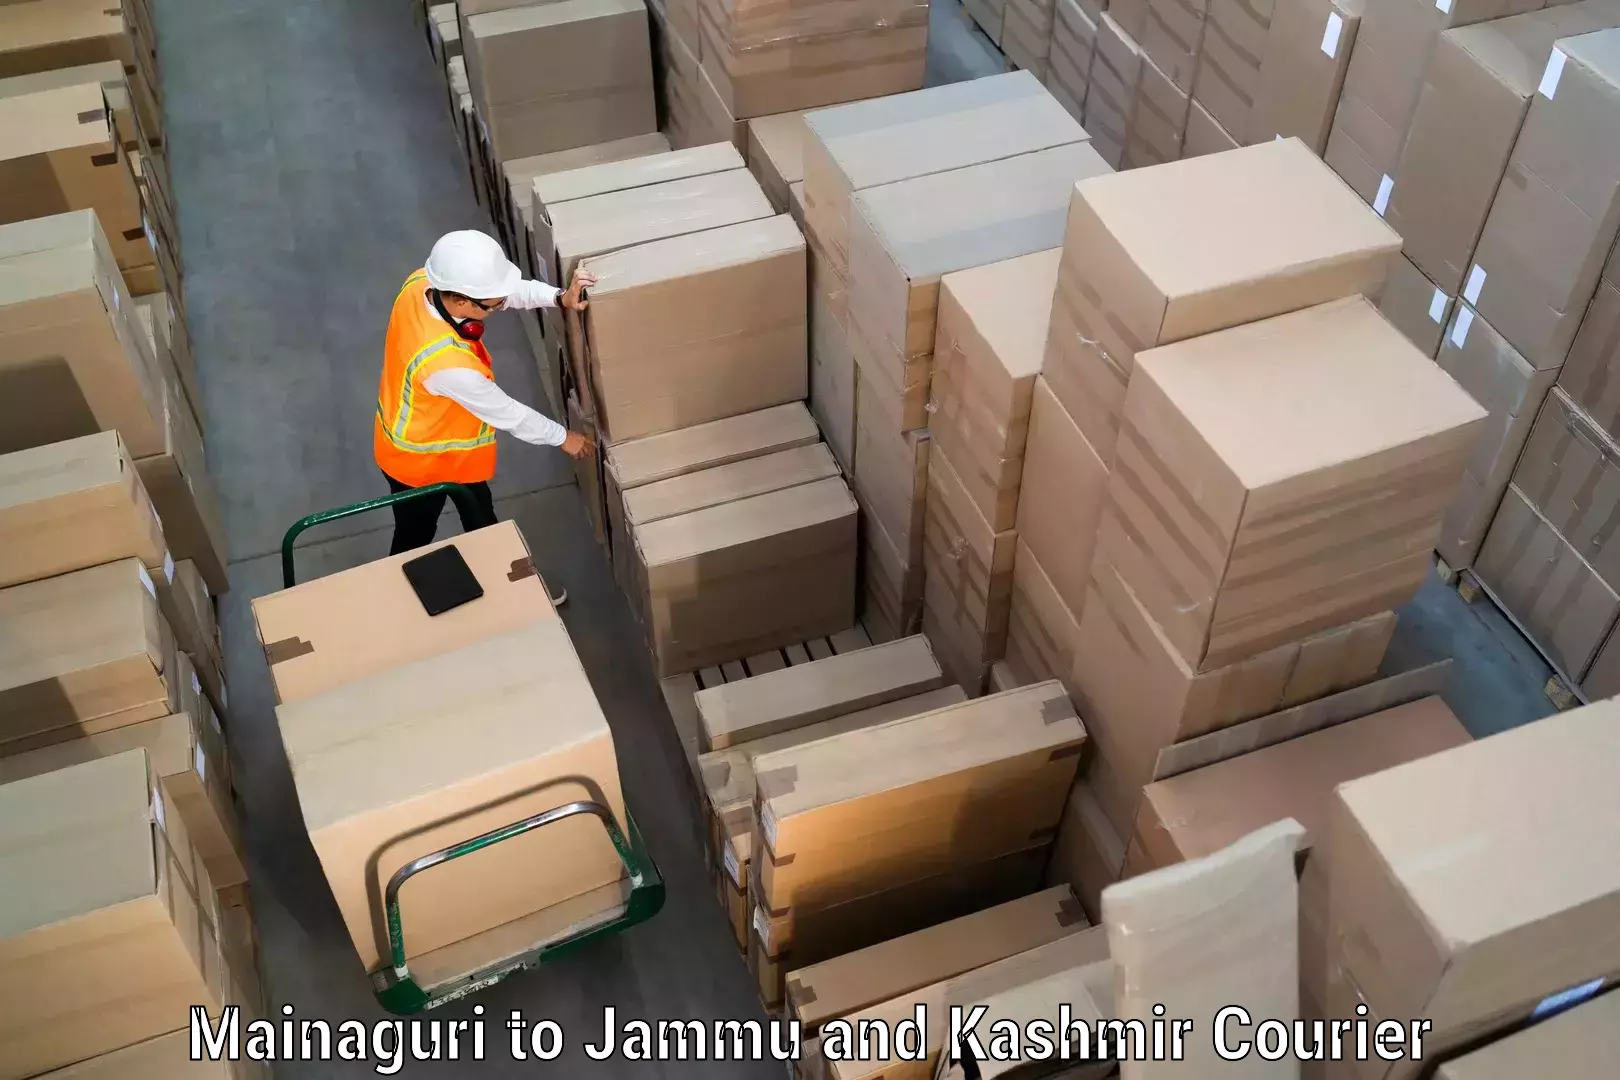 Digital courier platforms Mainaguri to Jammu and Kashmir